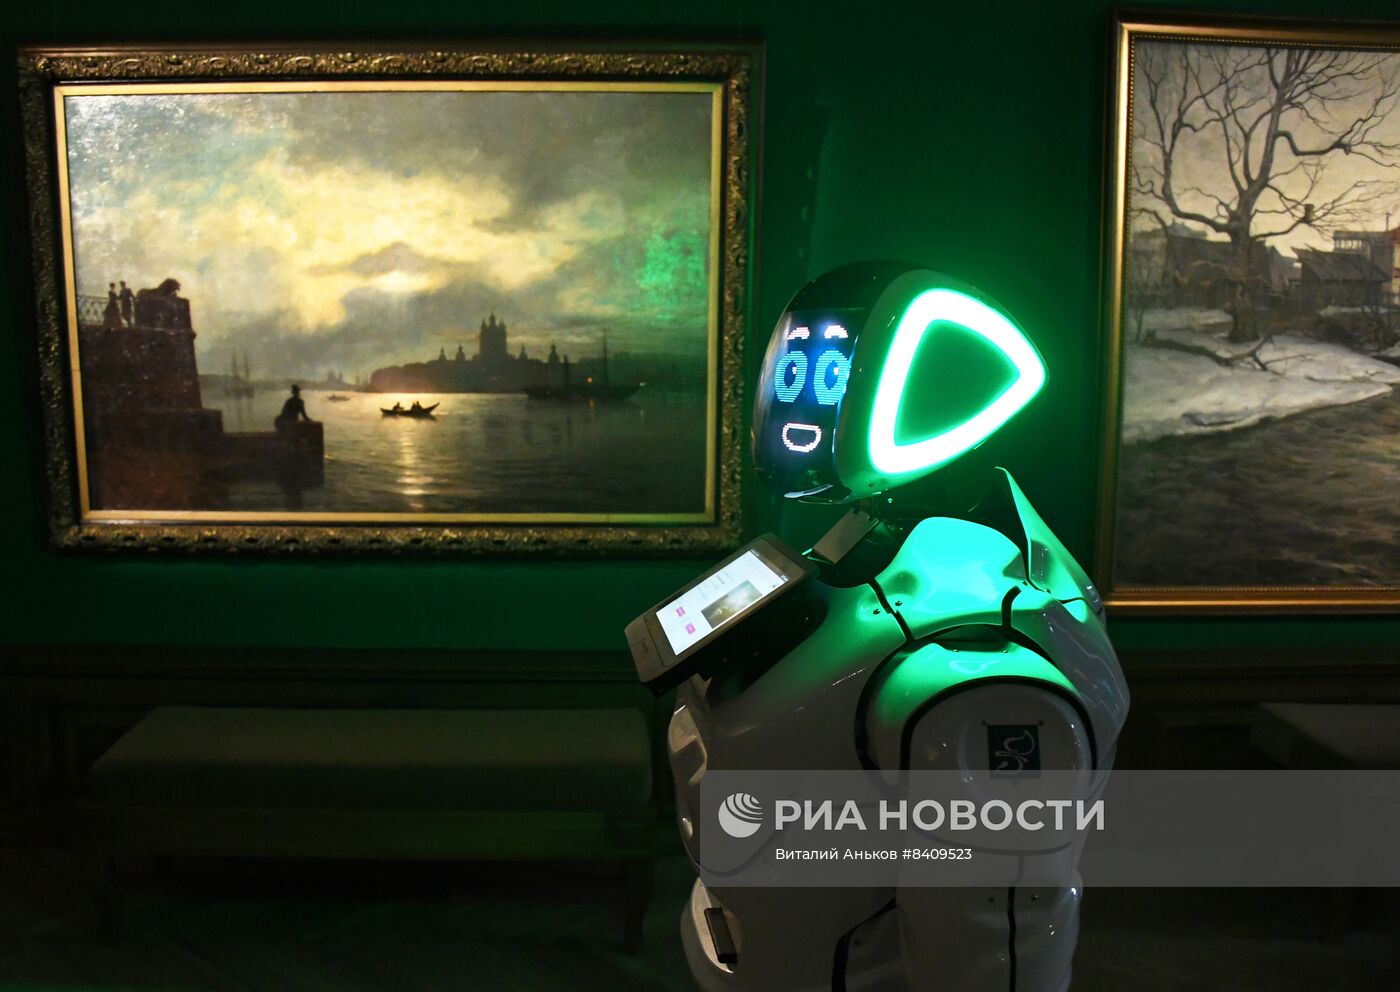 Робот-экскурсовод в Приморской картинной галерее